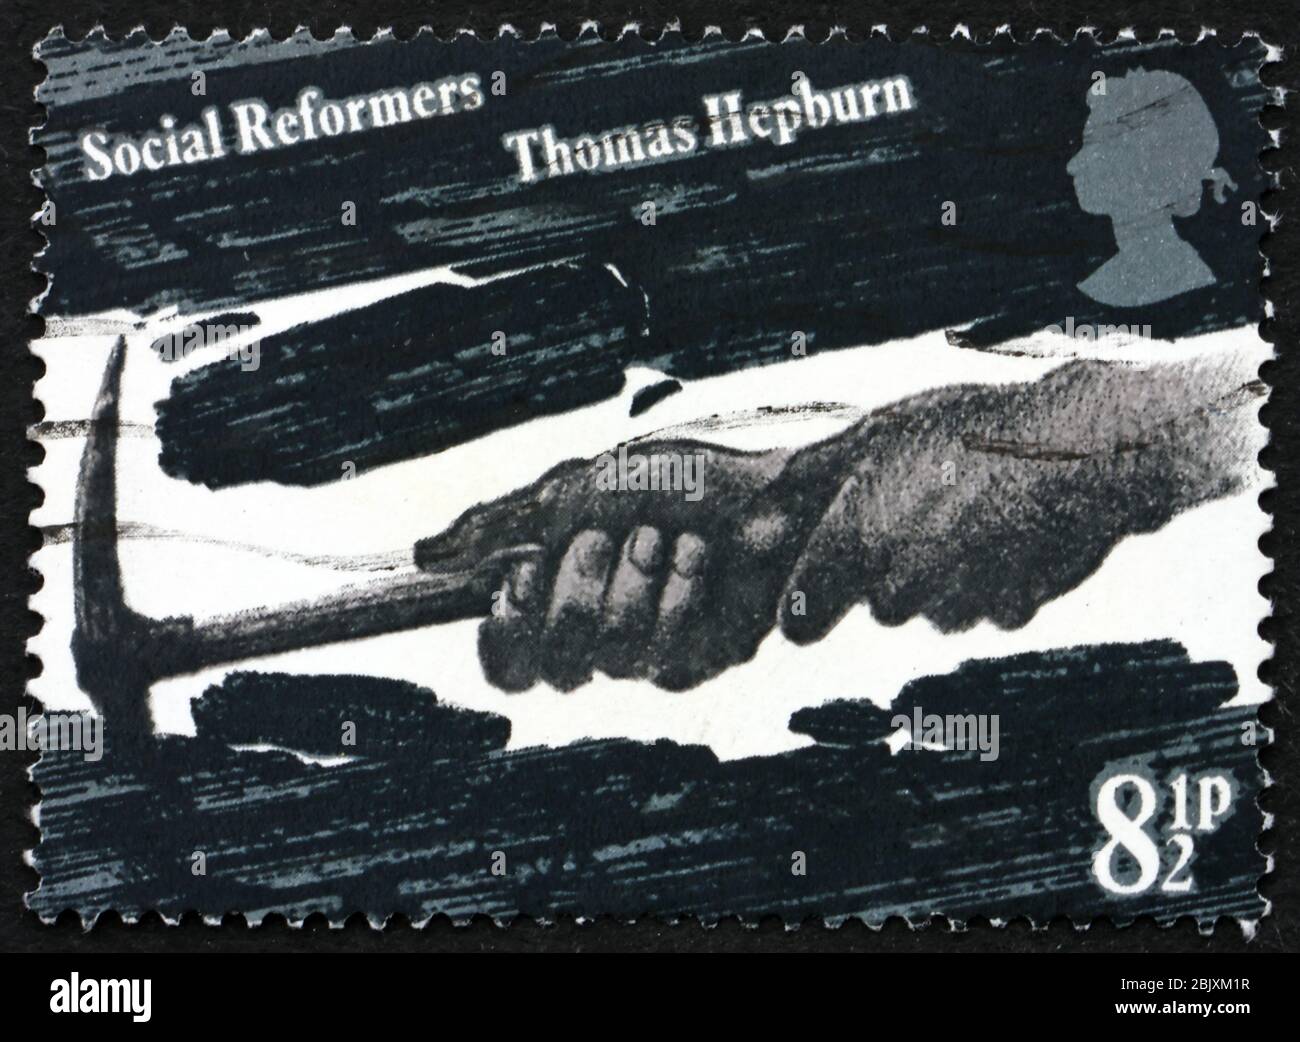 GRAN BRETAGNA - CIRCA 1976: Un francobollo stampato in Gran Bretagna mostra le mani di Coal Miner, dedicato a Thomas Hepburn, riformatore sociale, circa 1976 Foto Stock